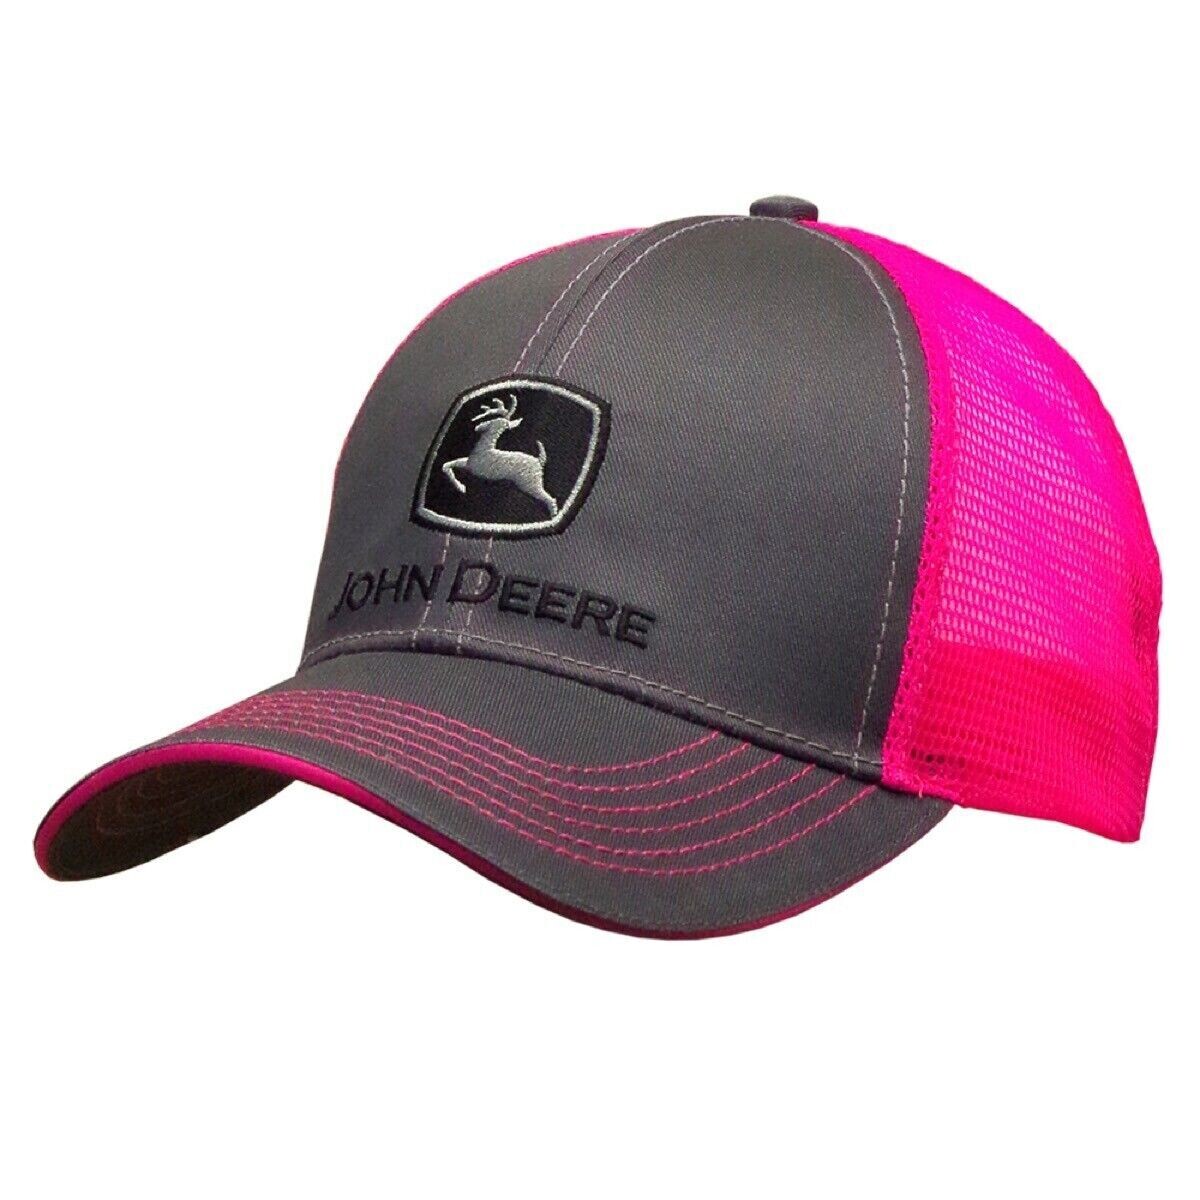 John Deere Pink Mesh cap